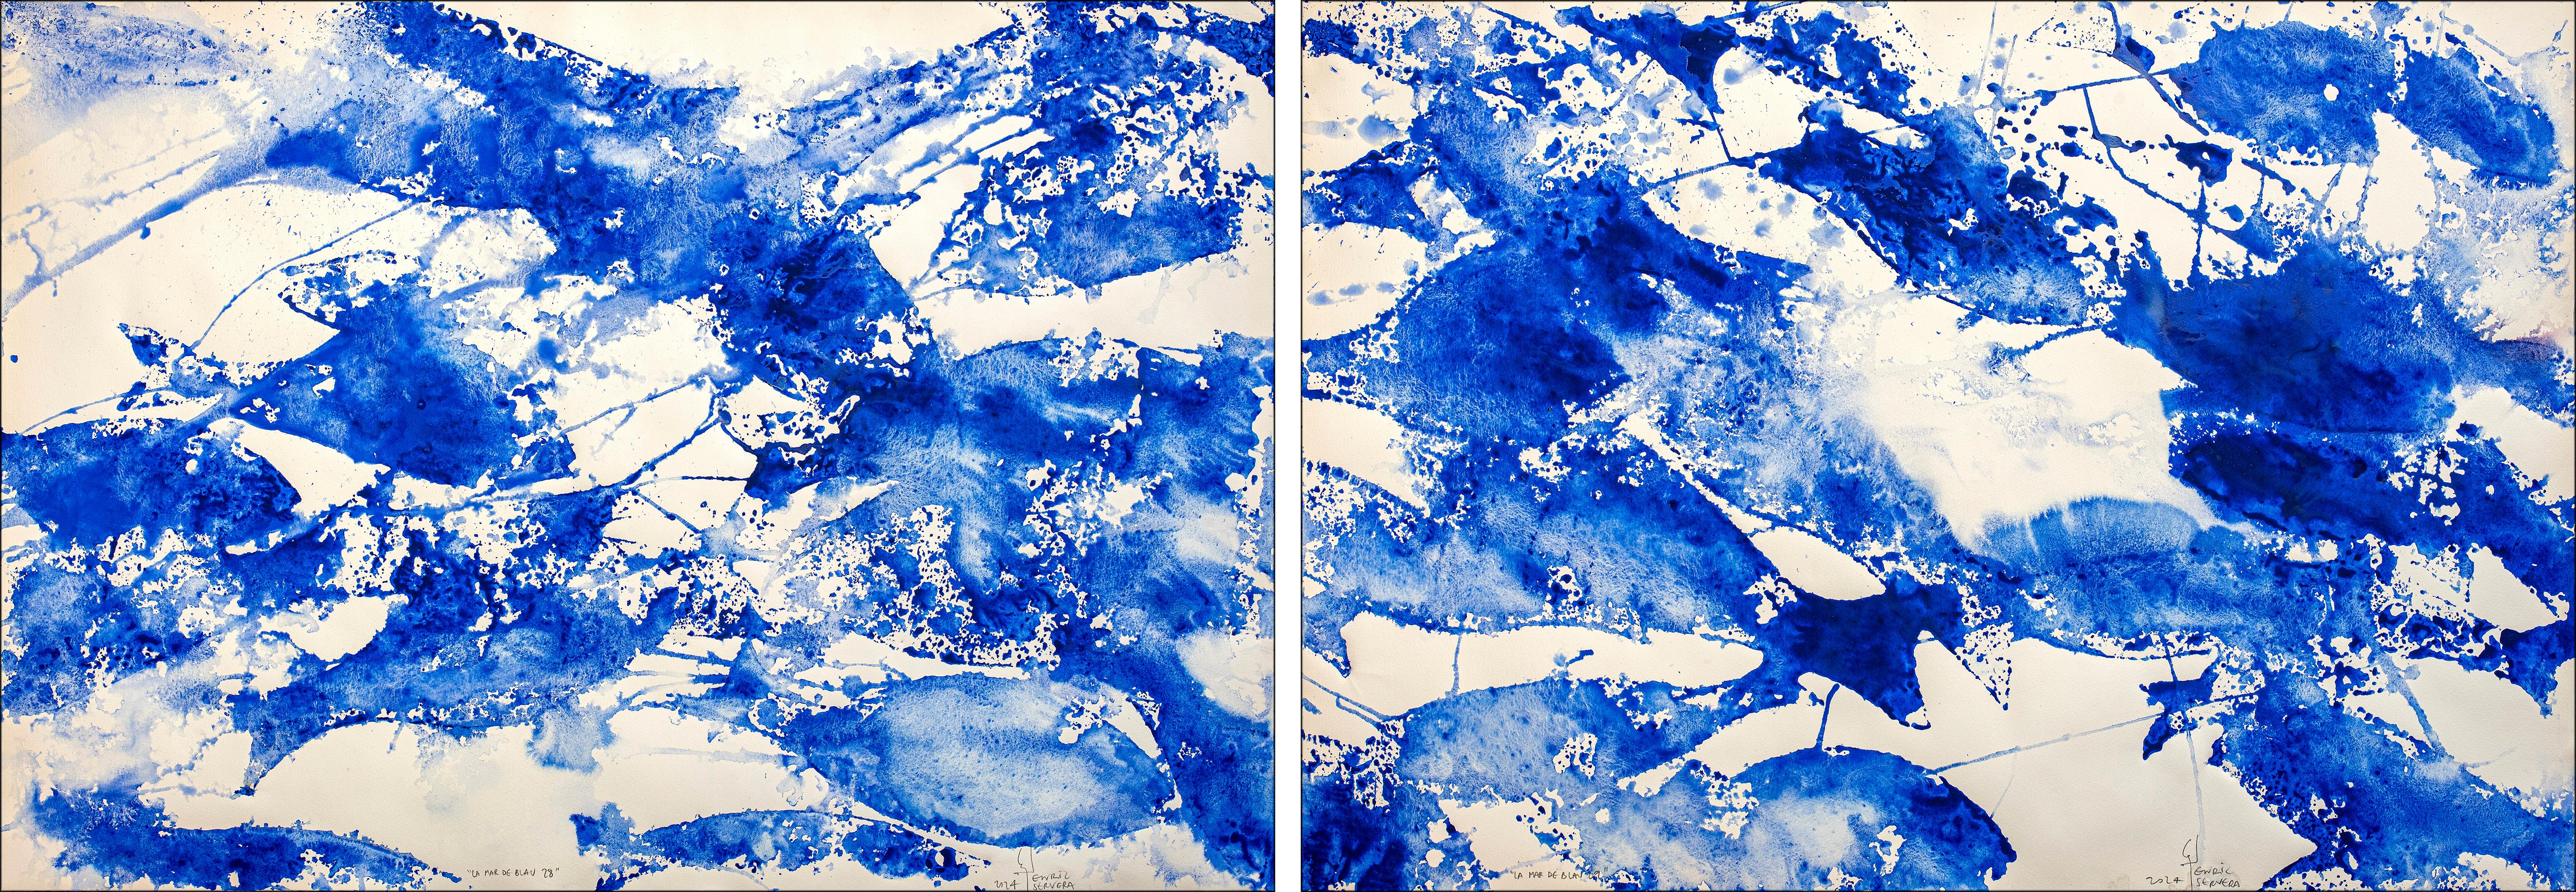 Animal Painting Enric Servera - Diptyque Sea of Blues, motifs de poissons bleus et blancs abstraits, style méditerranéen 